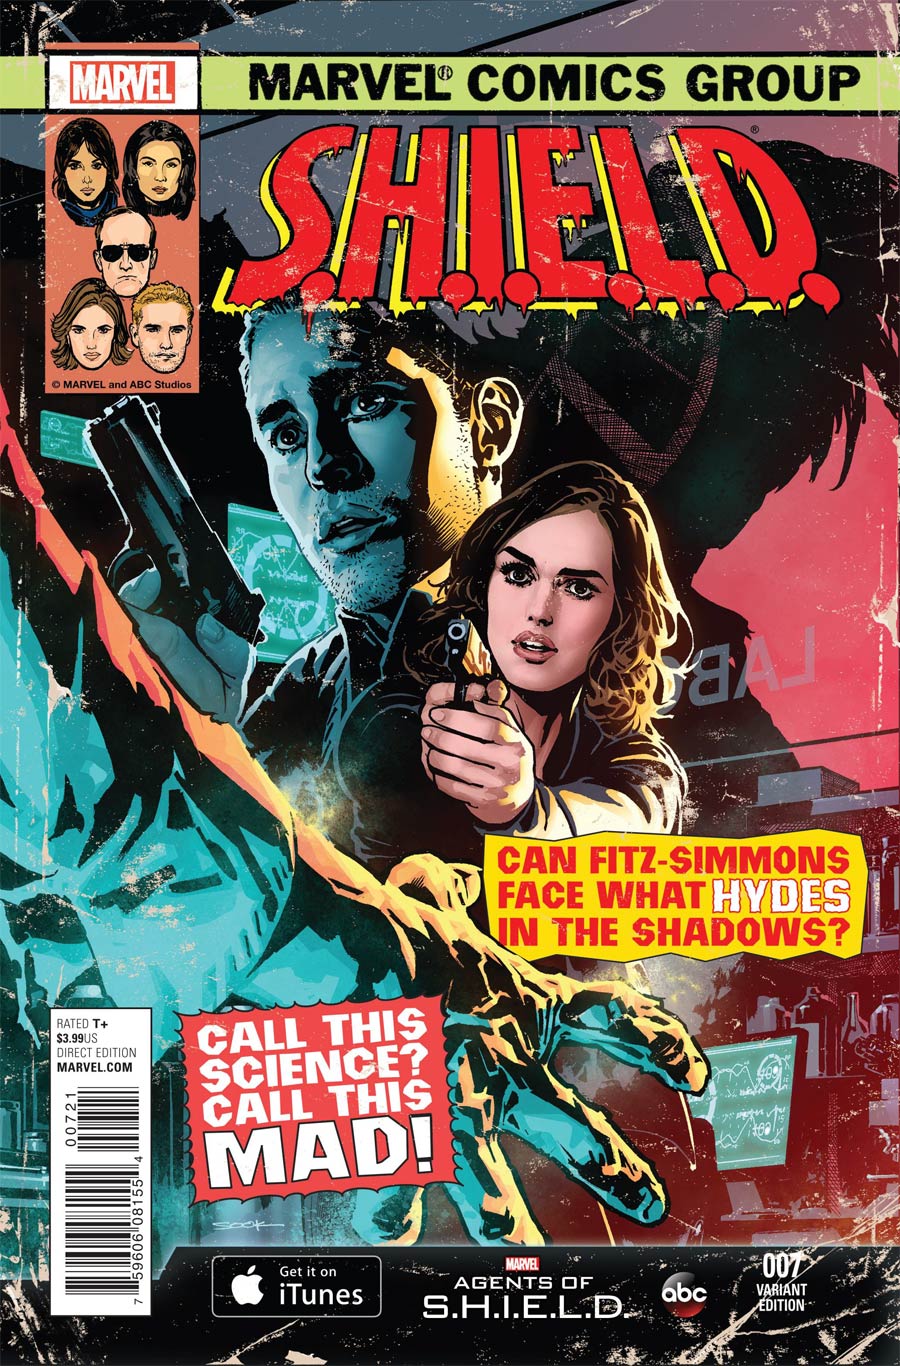 S.H.I.E.L.D. Vol 4 #7 Cover C Incentive Marvels Agents Of S.H.I.E.L.D. Variant Cover